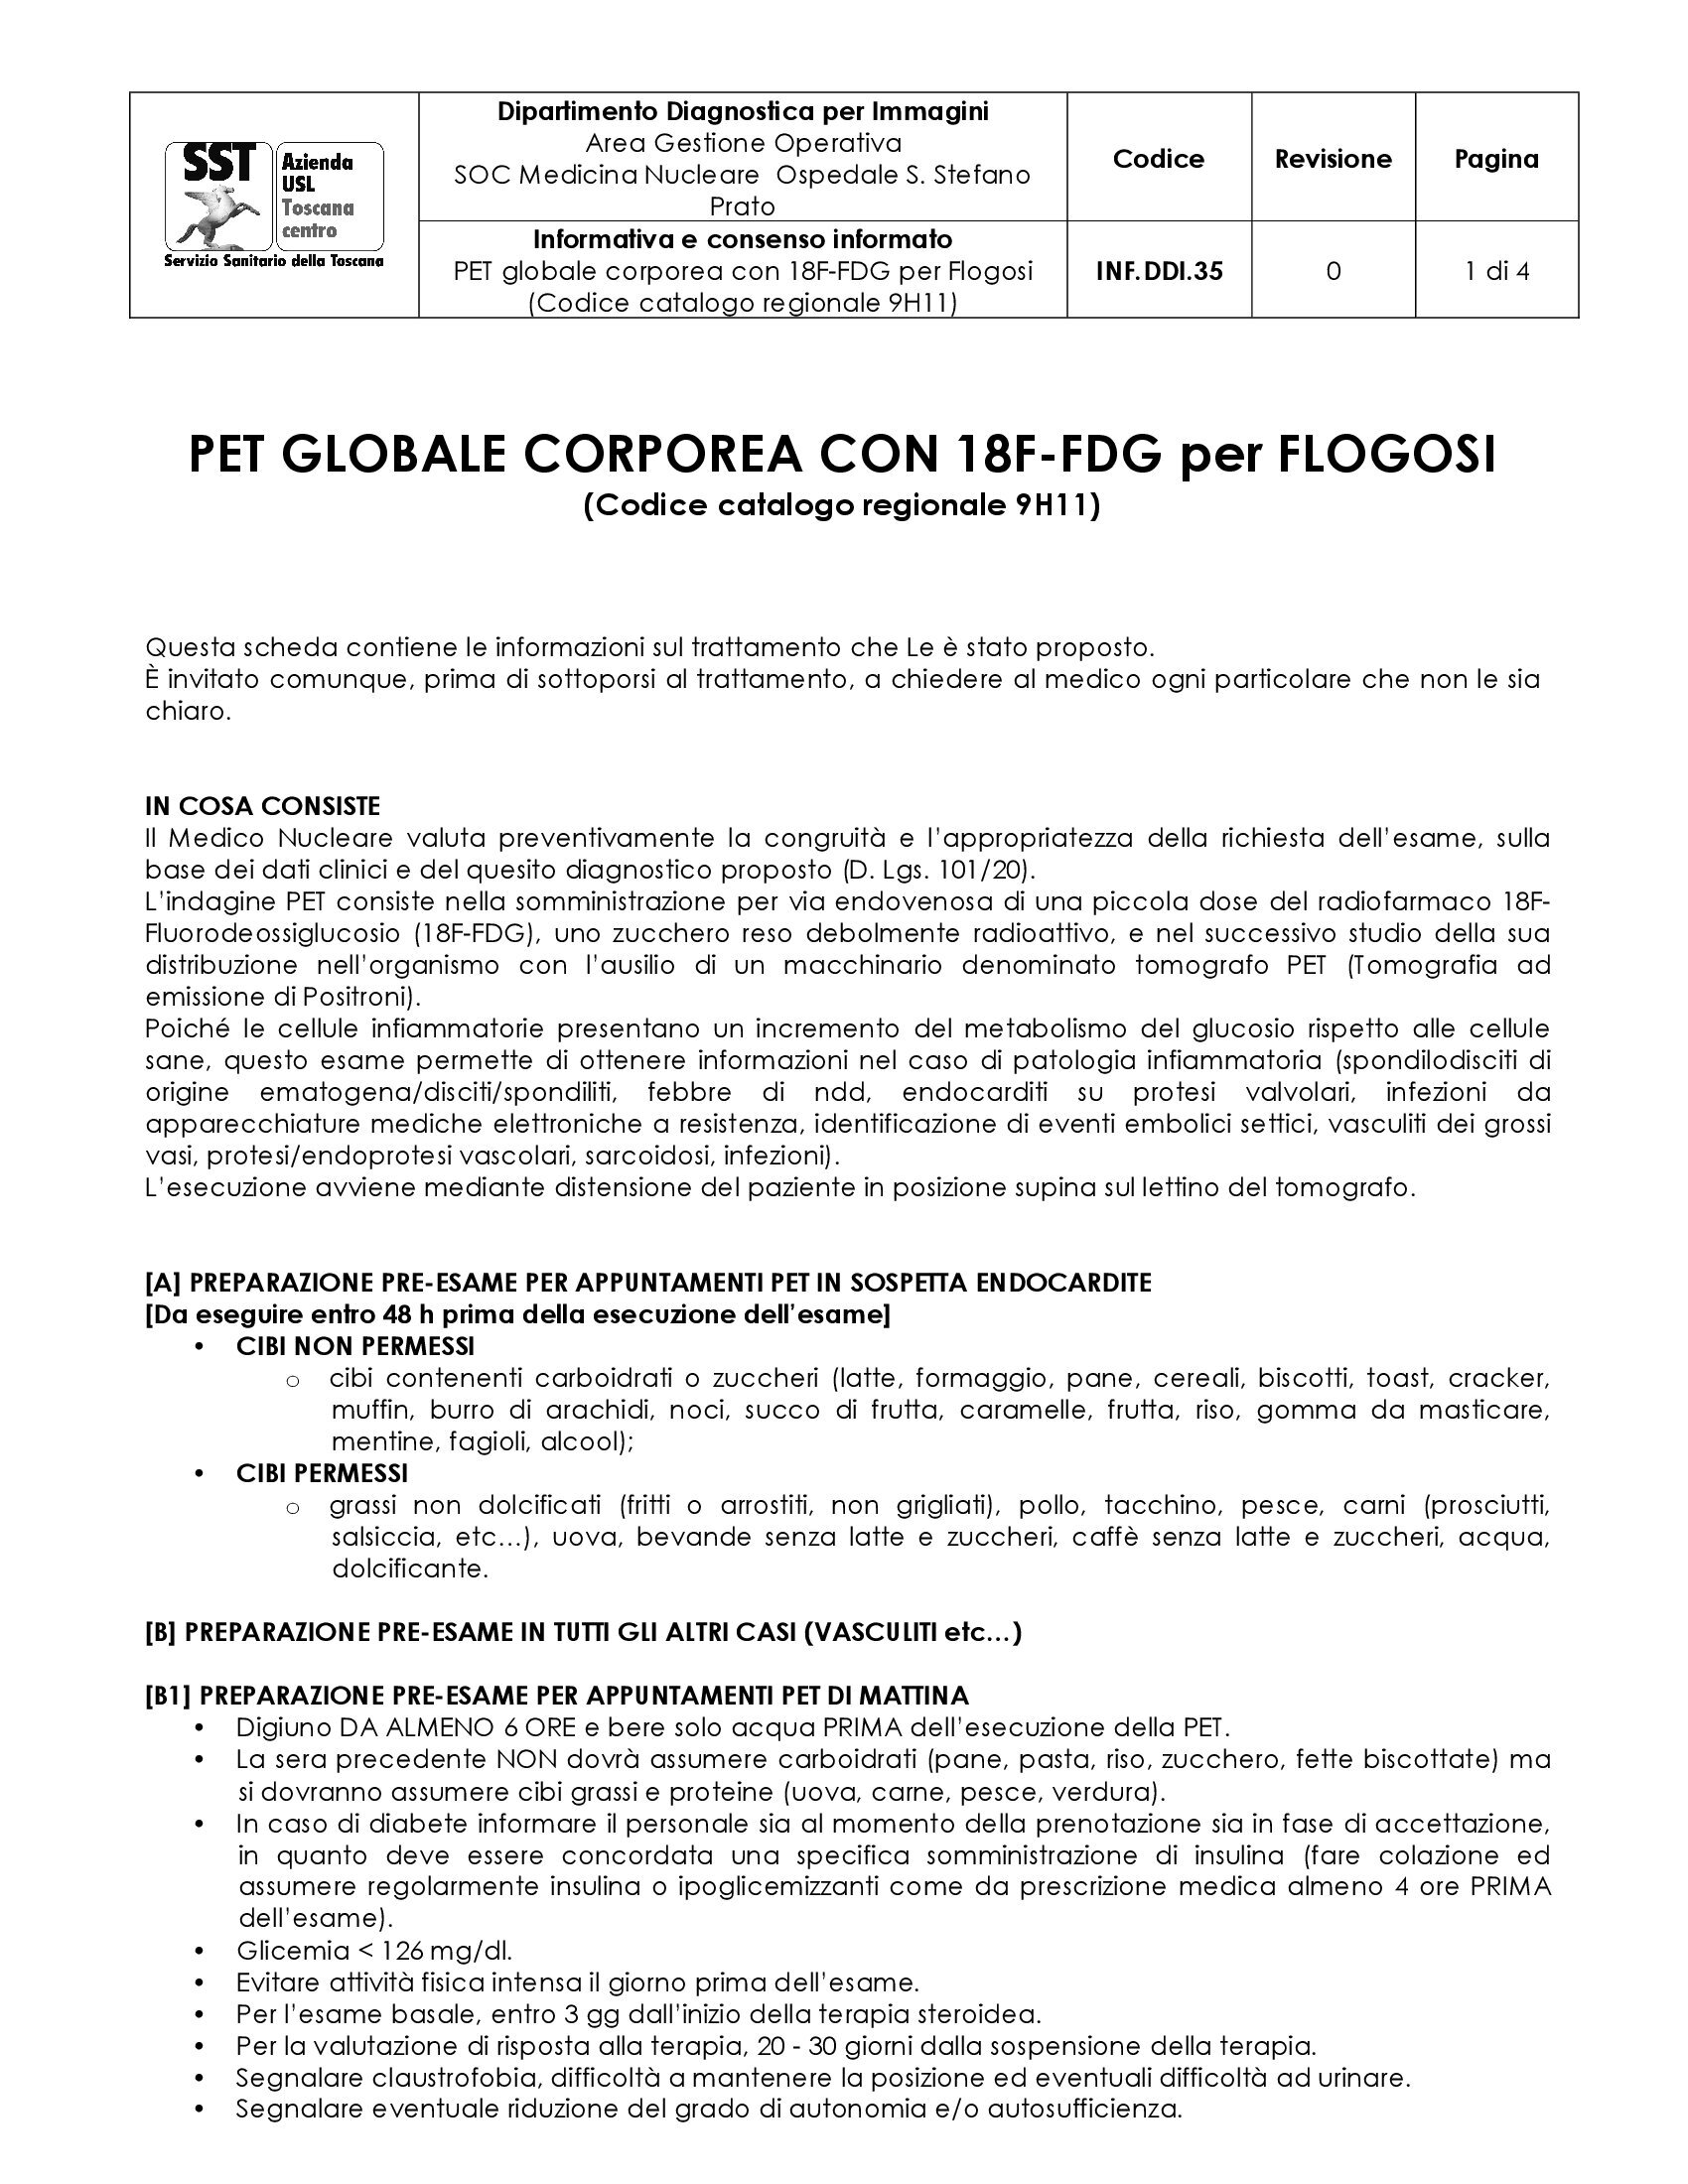 INF.DDI.35 PET globale corporea con 18F-FDG per Flogosi (Codice catalogo regionale 9H11)